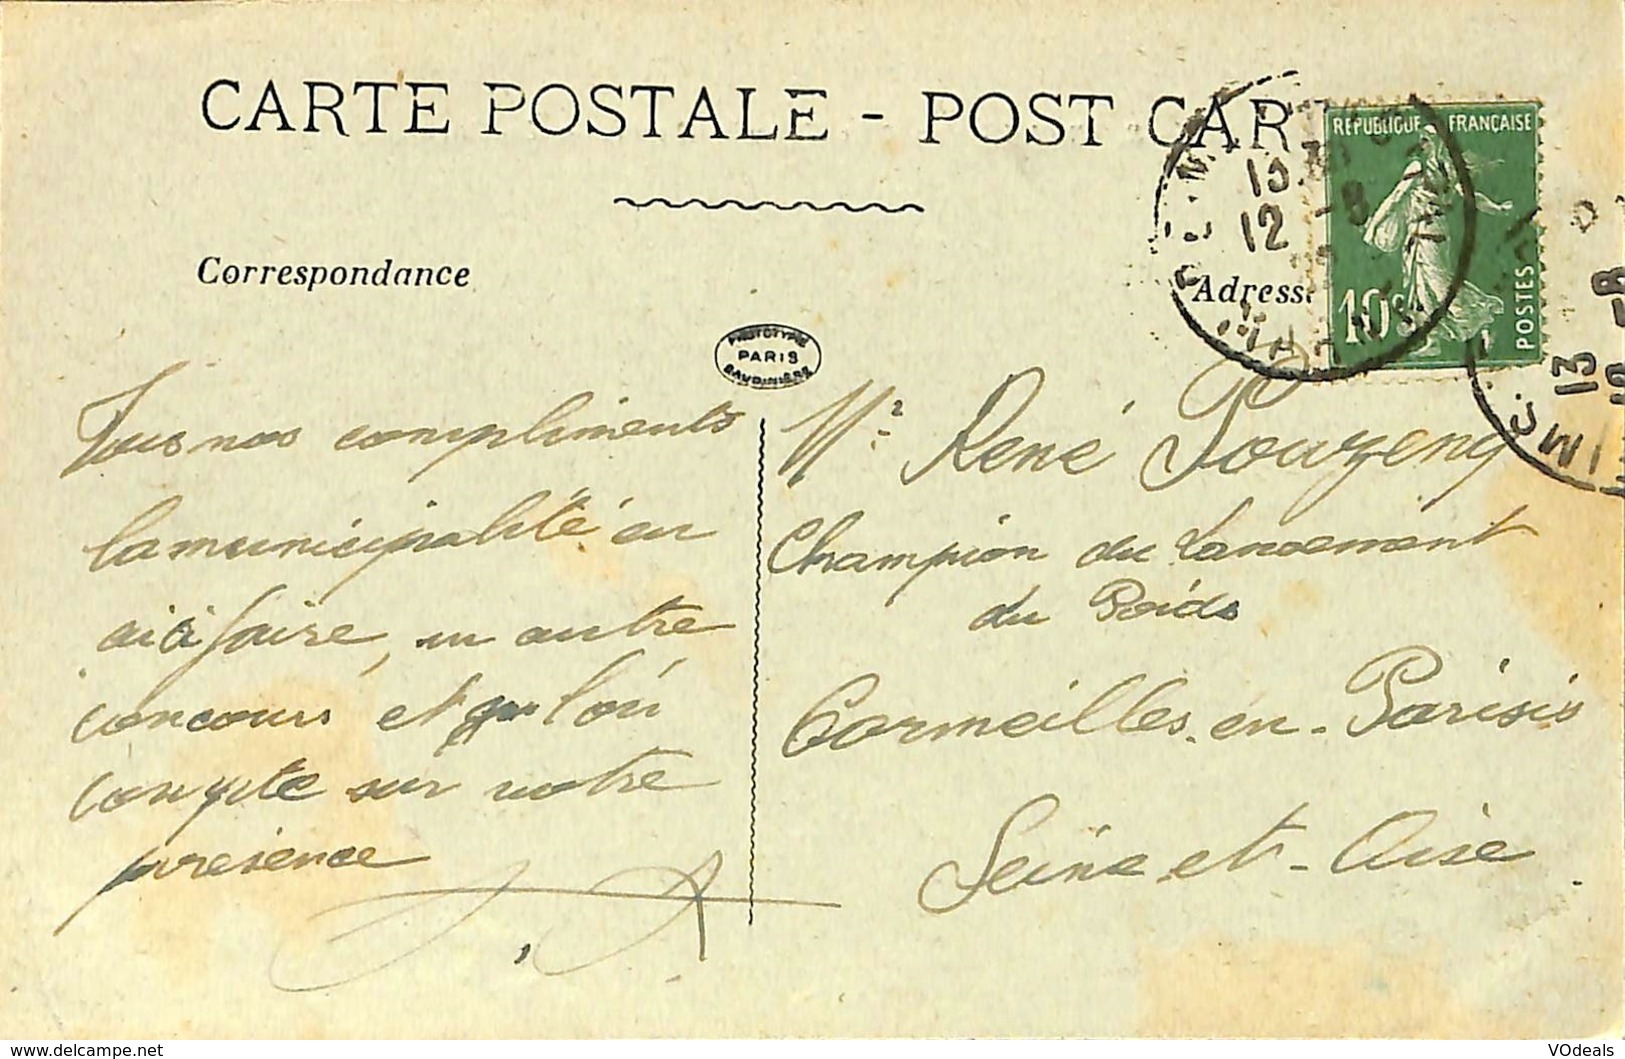 CPA - France - Lot de 10 cartes postales - Lot 17